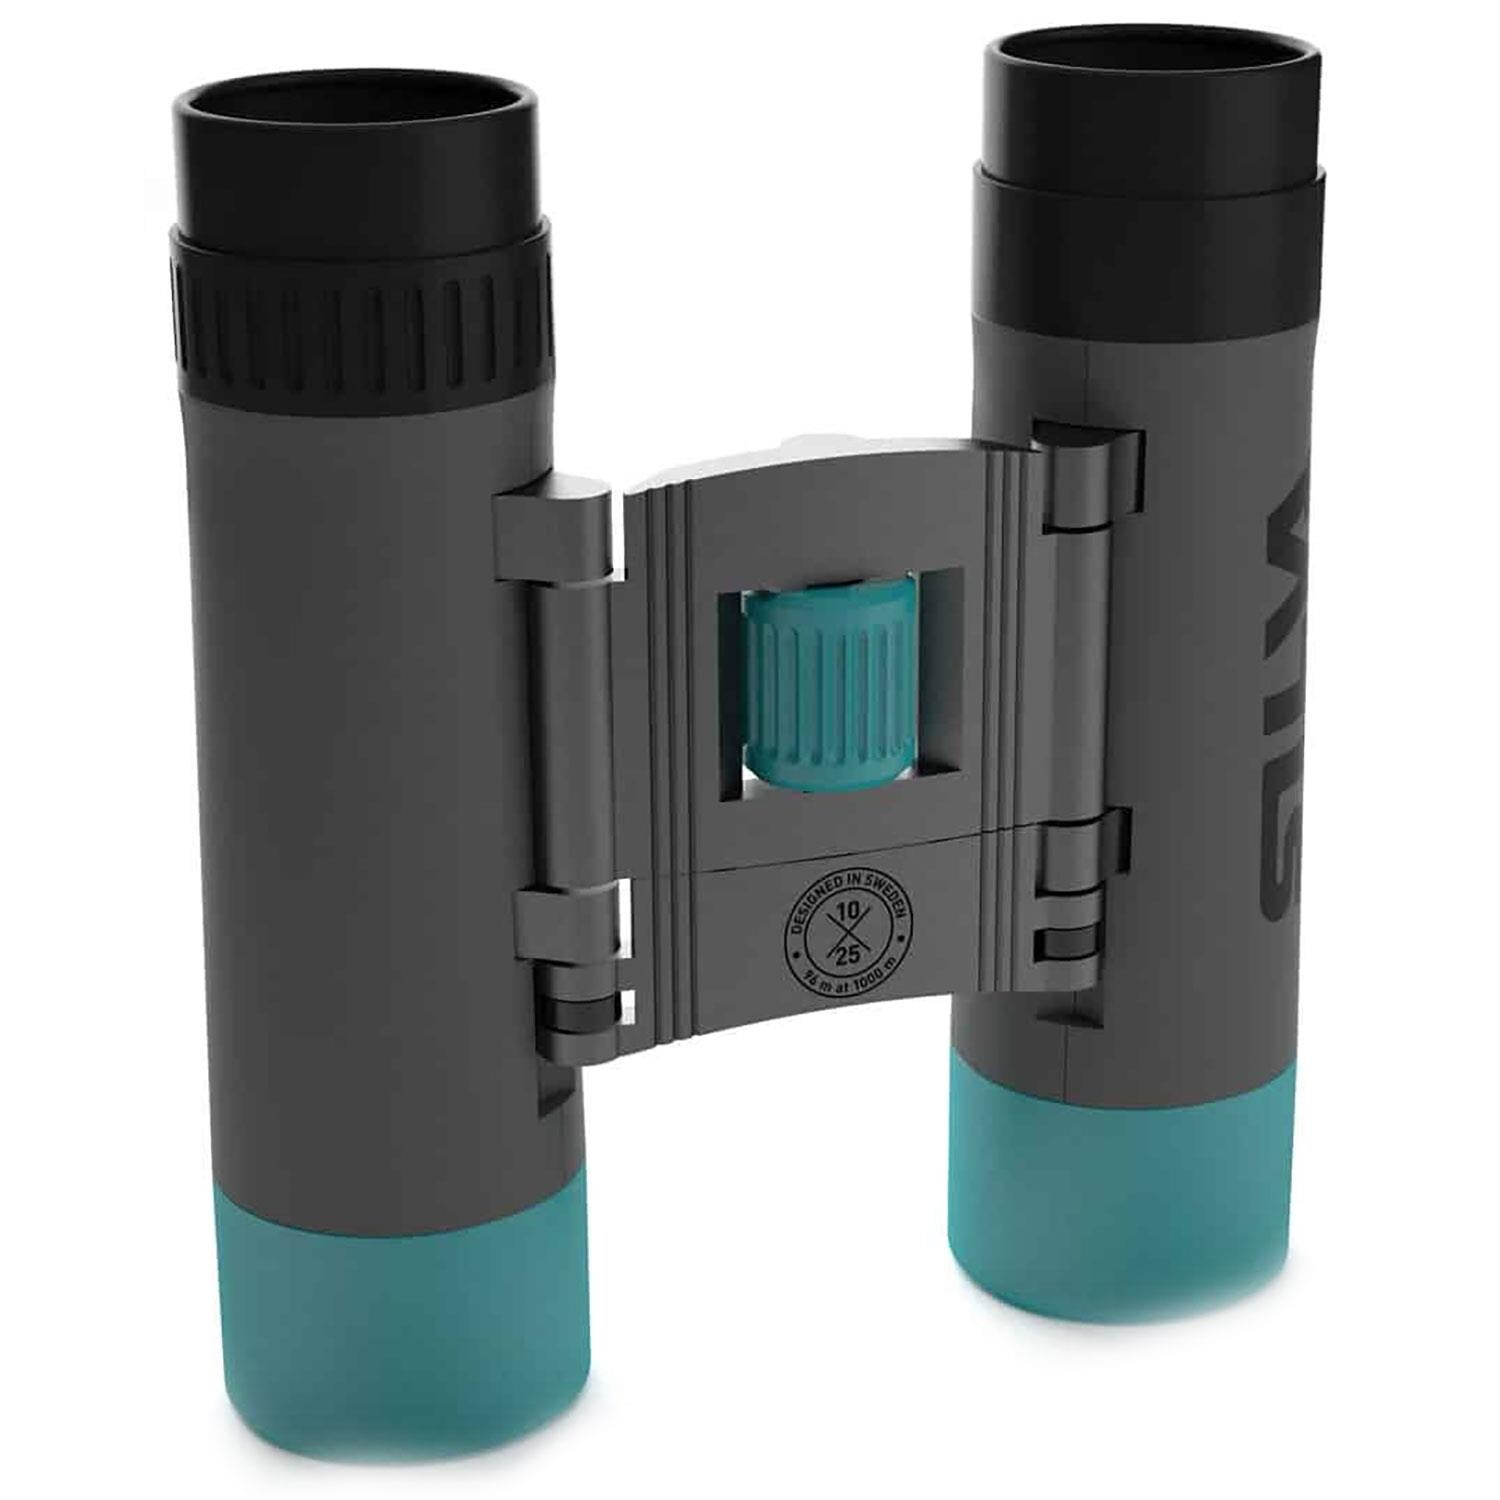 Produktionscenter Glimte Skole lærer Silva Binocular Pocket 10X - Køb den hos Friluftsland